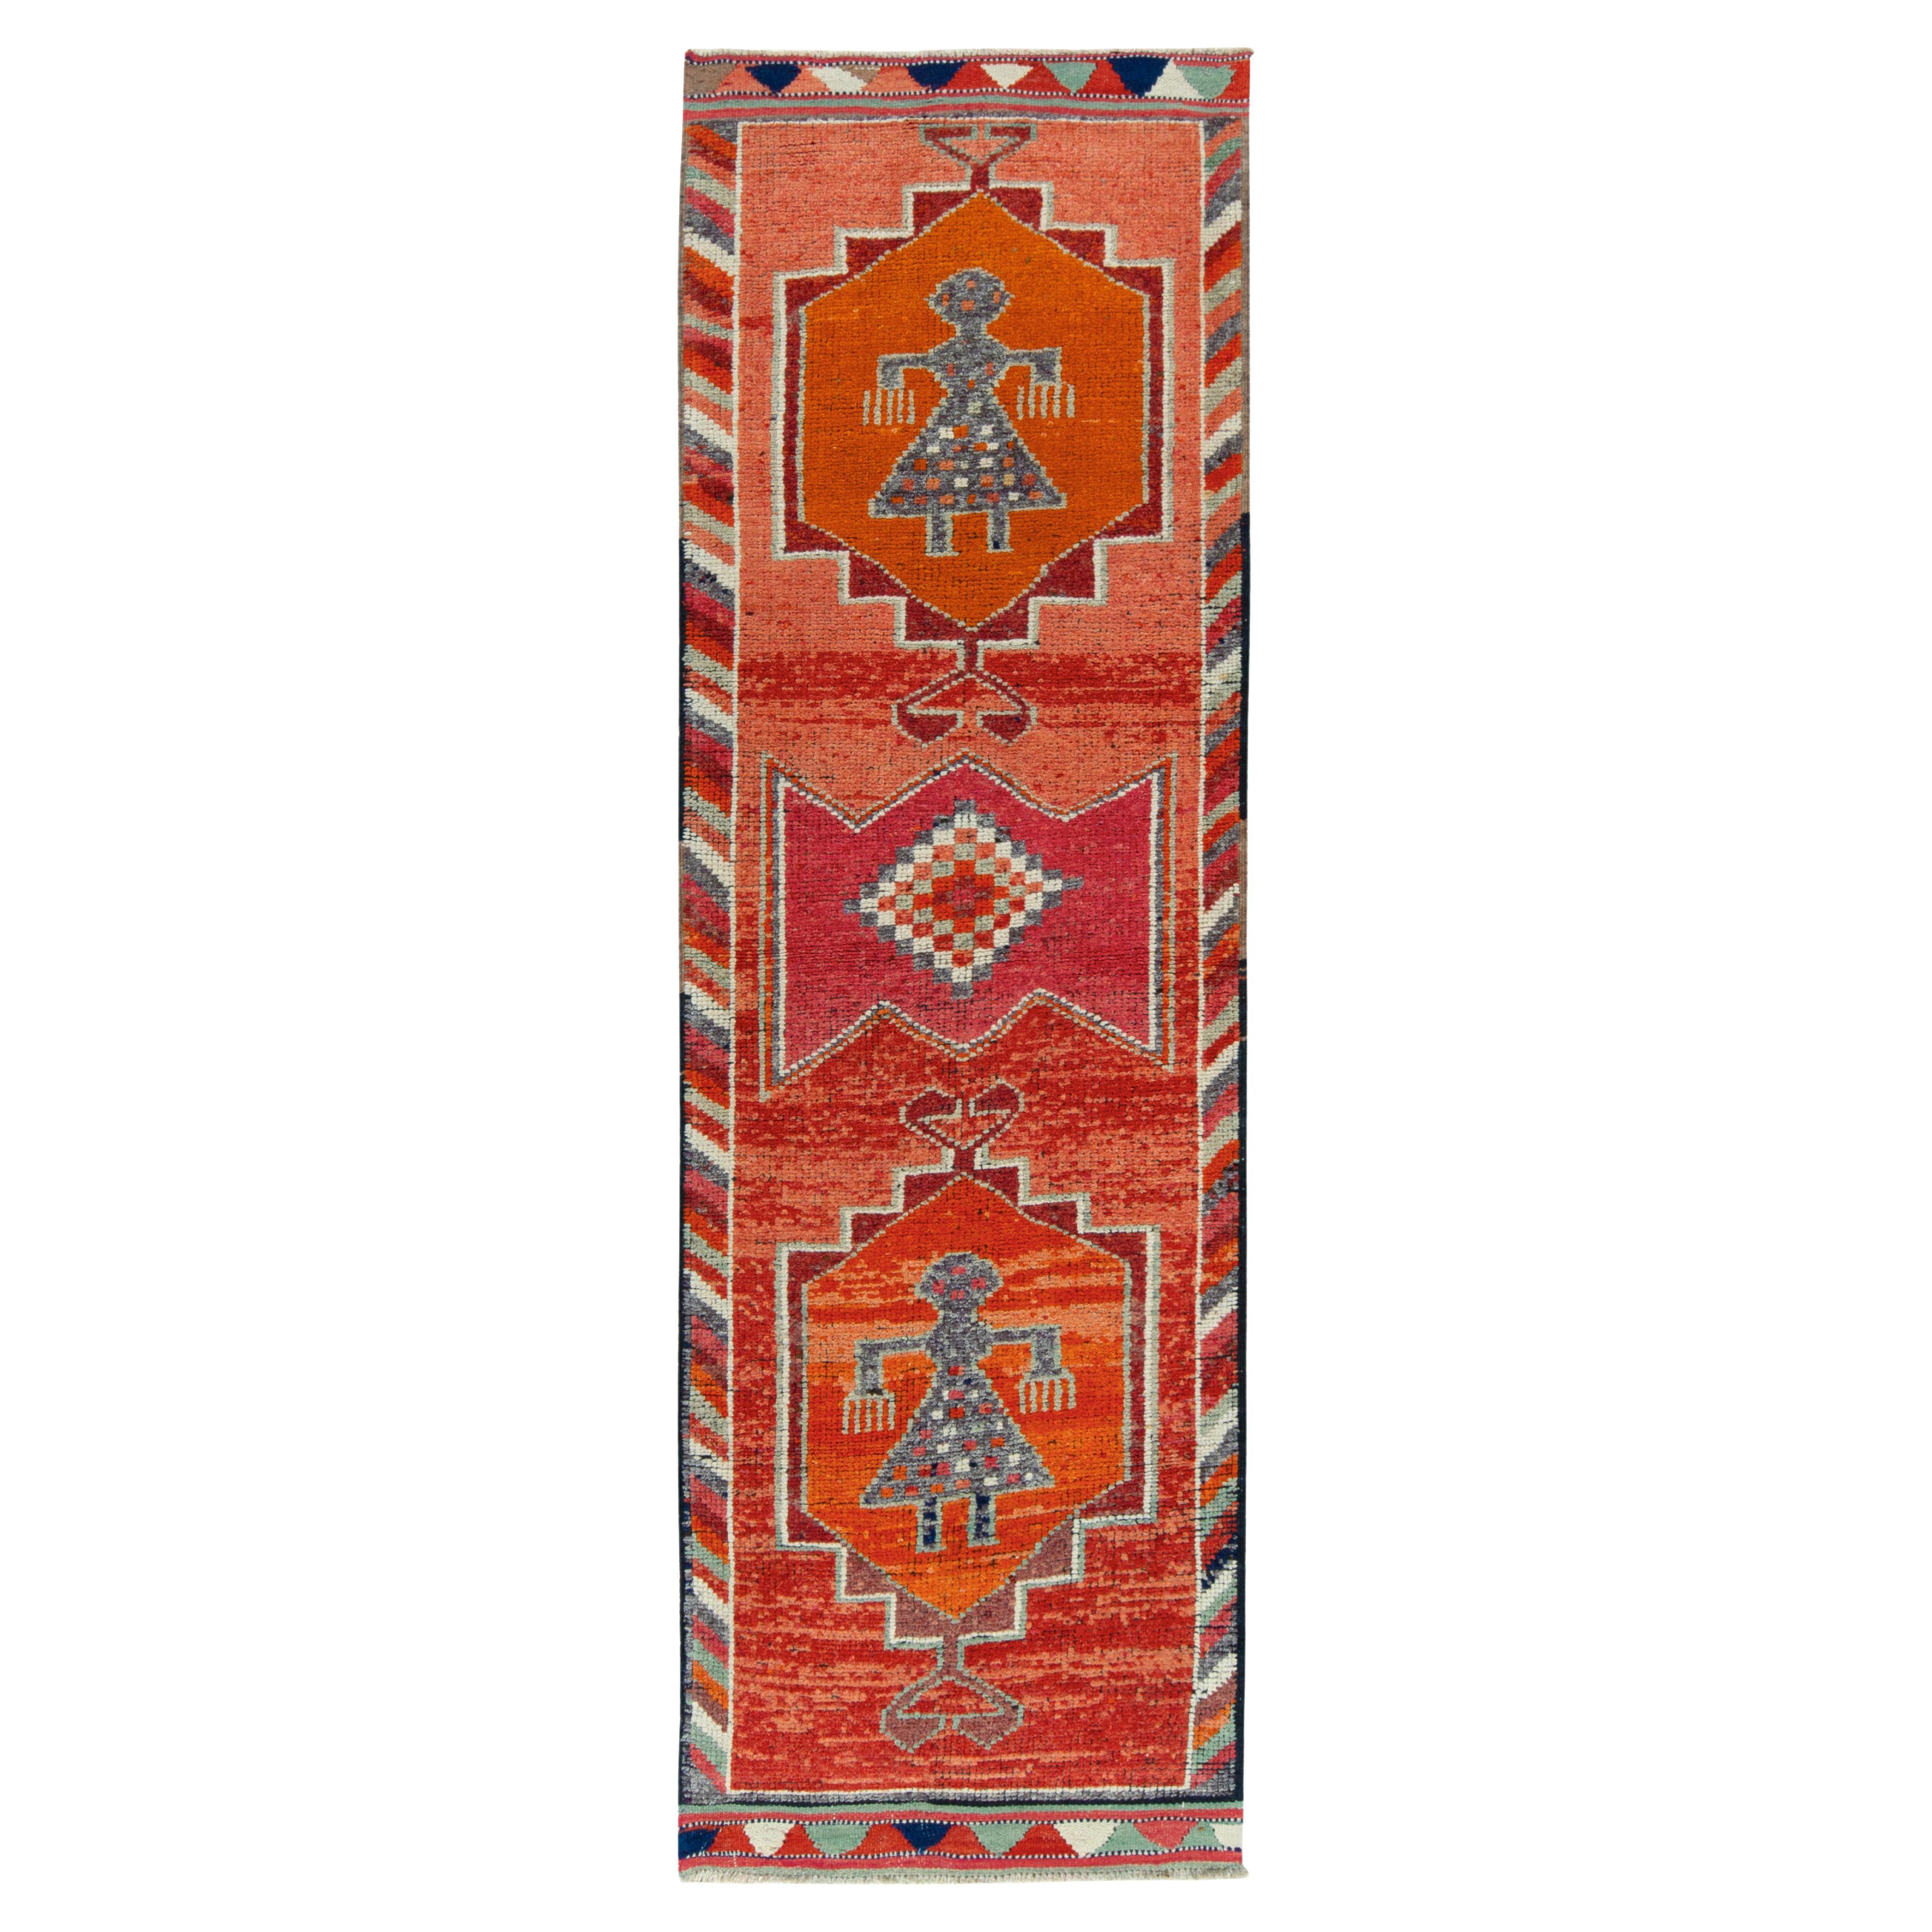 Tapis tribal vintage des années 1950 à motifs rouges, oranges et géométriques de Rug & Kilim